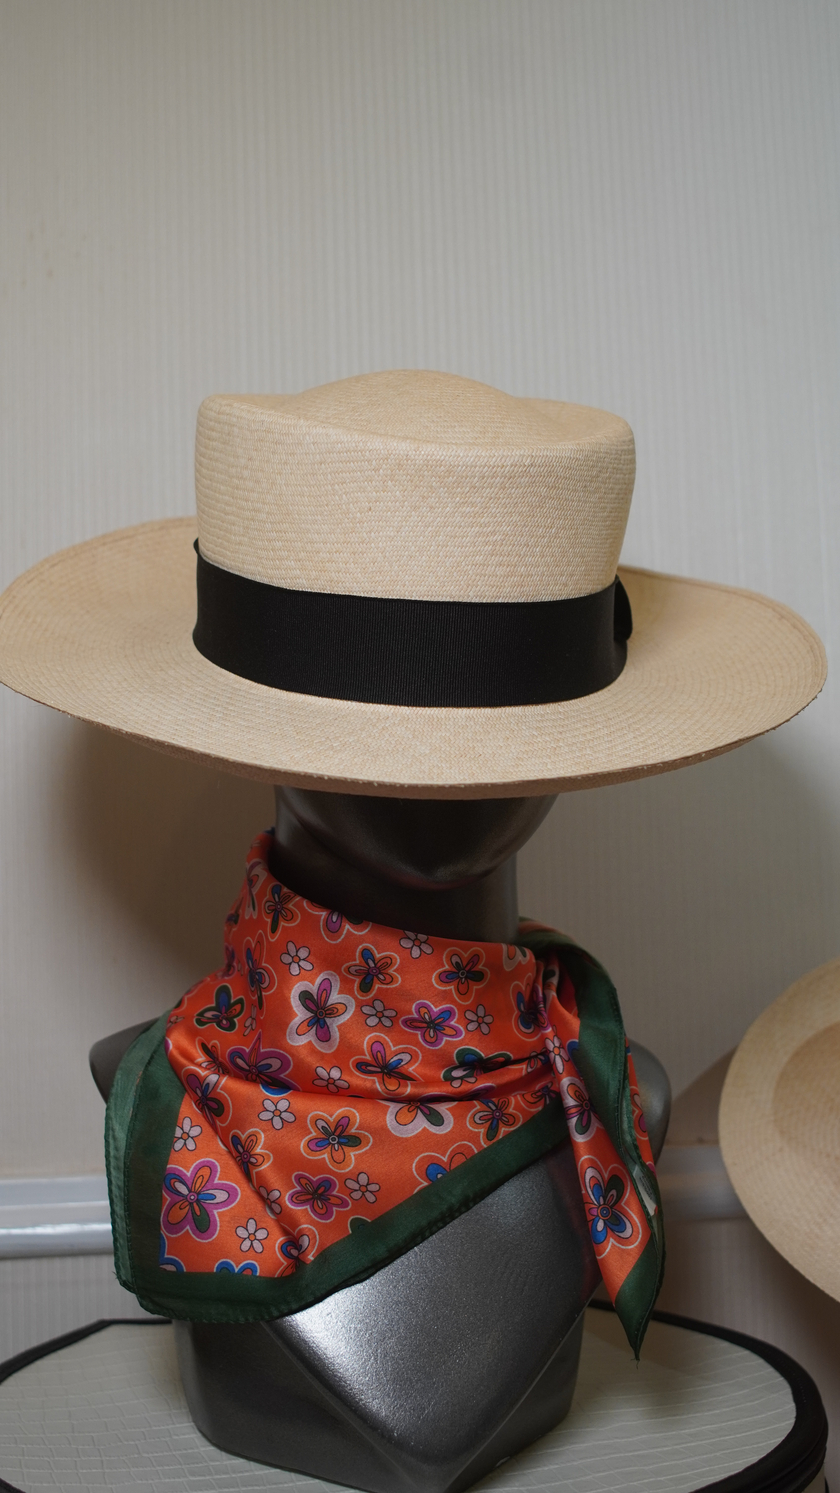 Hiện nay, người ta có thể sử dụng loại nón này như một phụ kiện cho nhiều phong cách ăn mặc khác nhau.